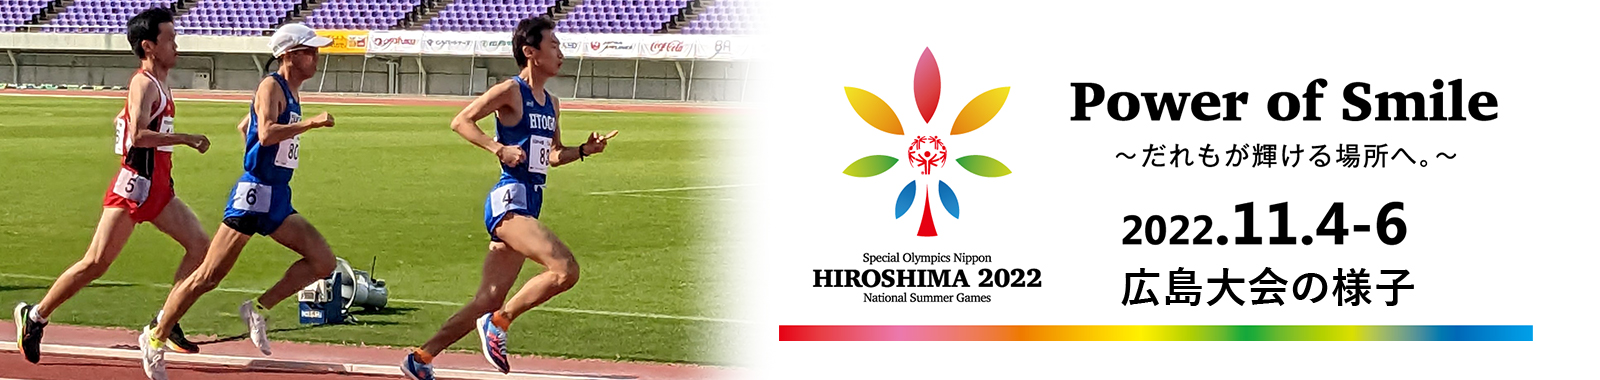 2022年 第8回スペシャルオリンピックス日本夏季ナショナルゲーム・広島